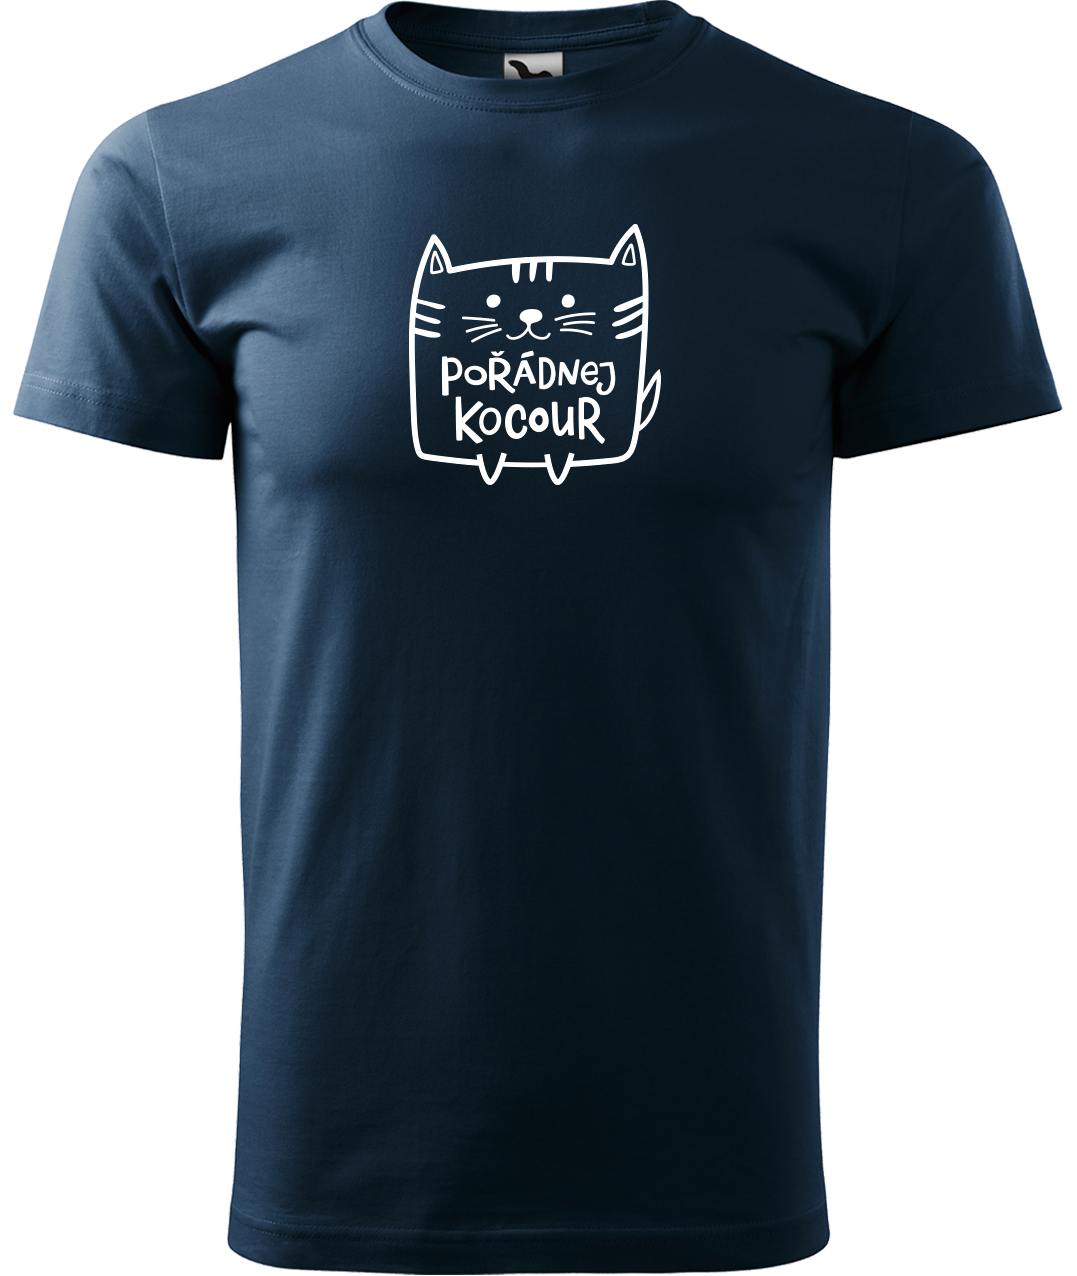 Pánské tričko s kočkou - Pořádnej kocour Velikost: XL, Barva: Námořní modrá (02)